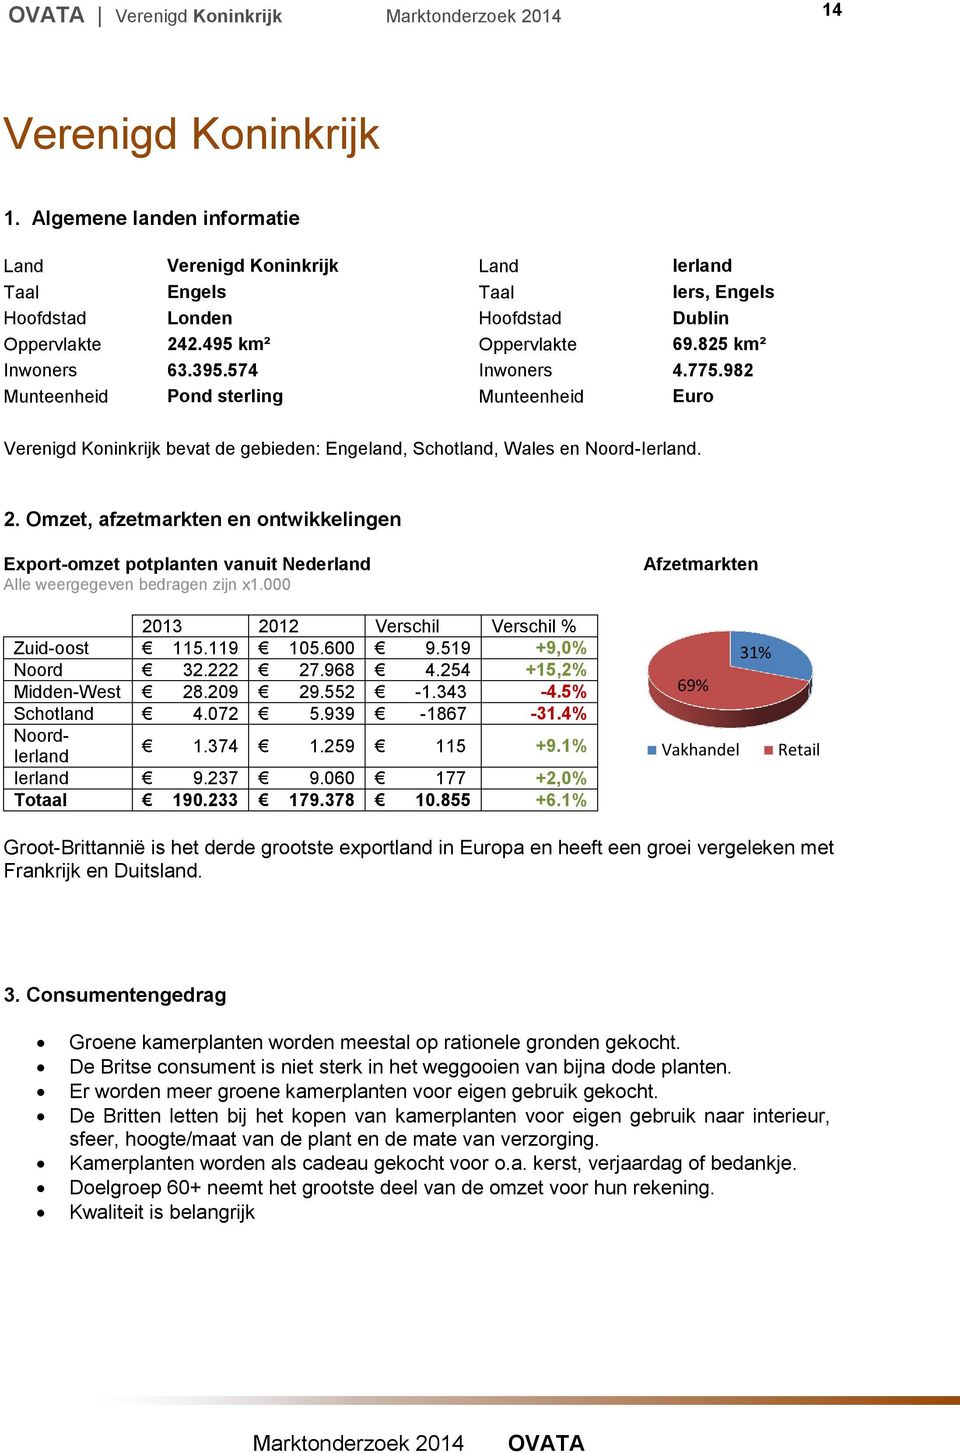 Omzet, afzetmarkten en ontwikkelingen Export-omzet potplanten vanuit Nederland Alle weergegeven bedragen zijn x1.000 2013 2012 Verschil Verschil % Zuid-oost 115.119 105.600 9.519 +9,0% Noord 32.